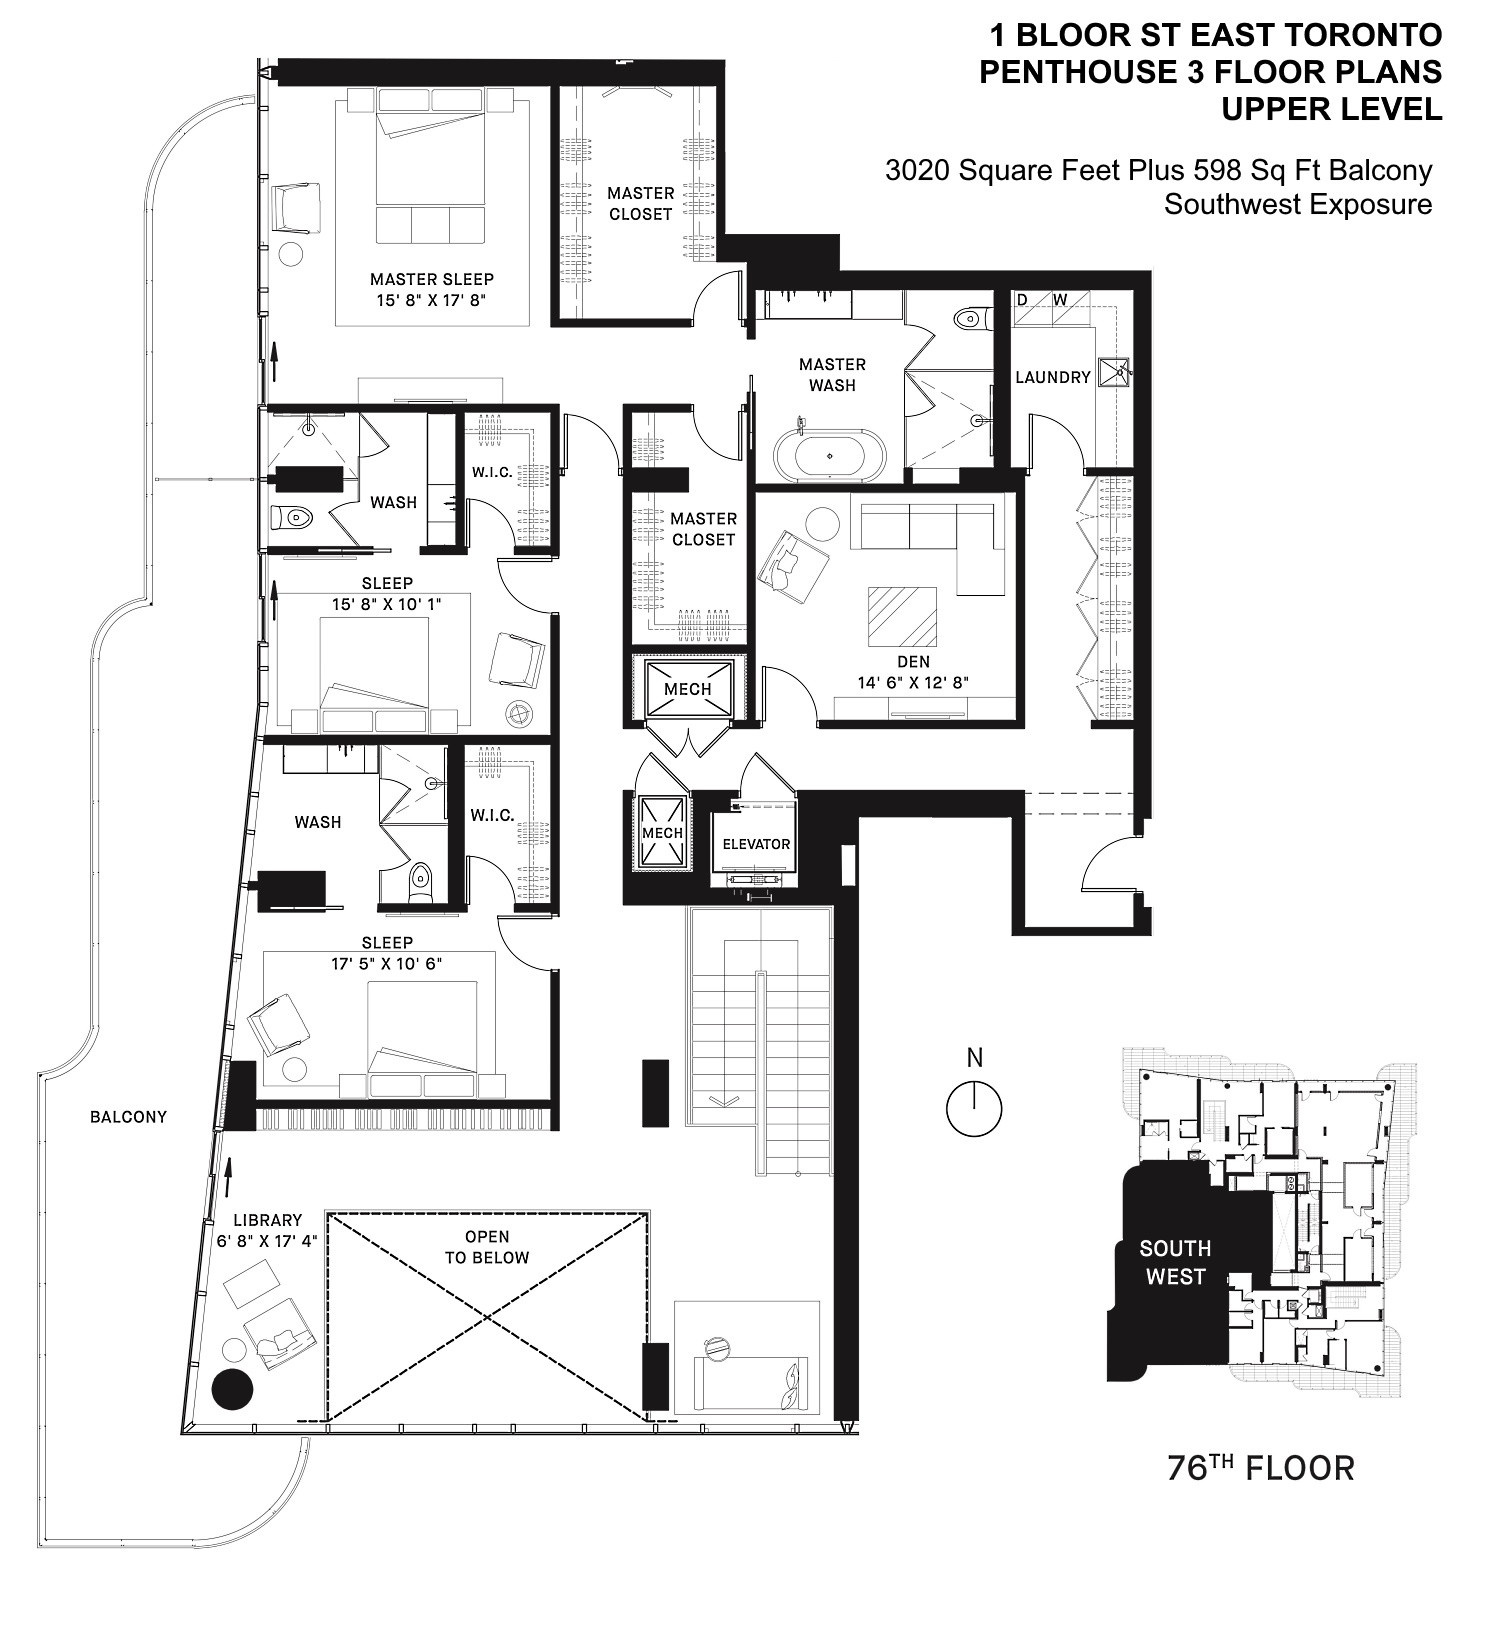 One Bloor St East Toronto Penthouse Floor Plans 3 Bedroom